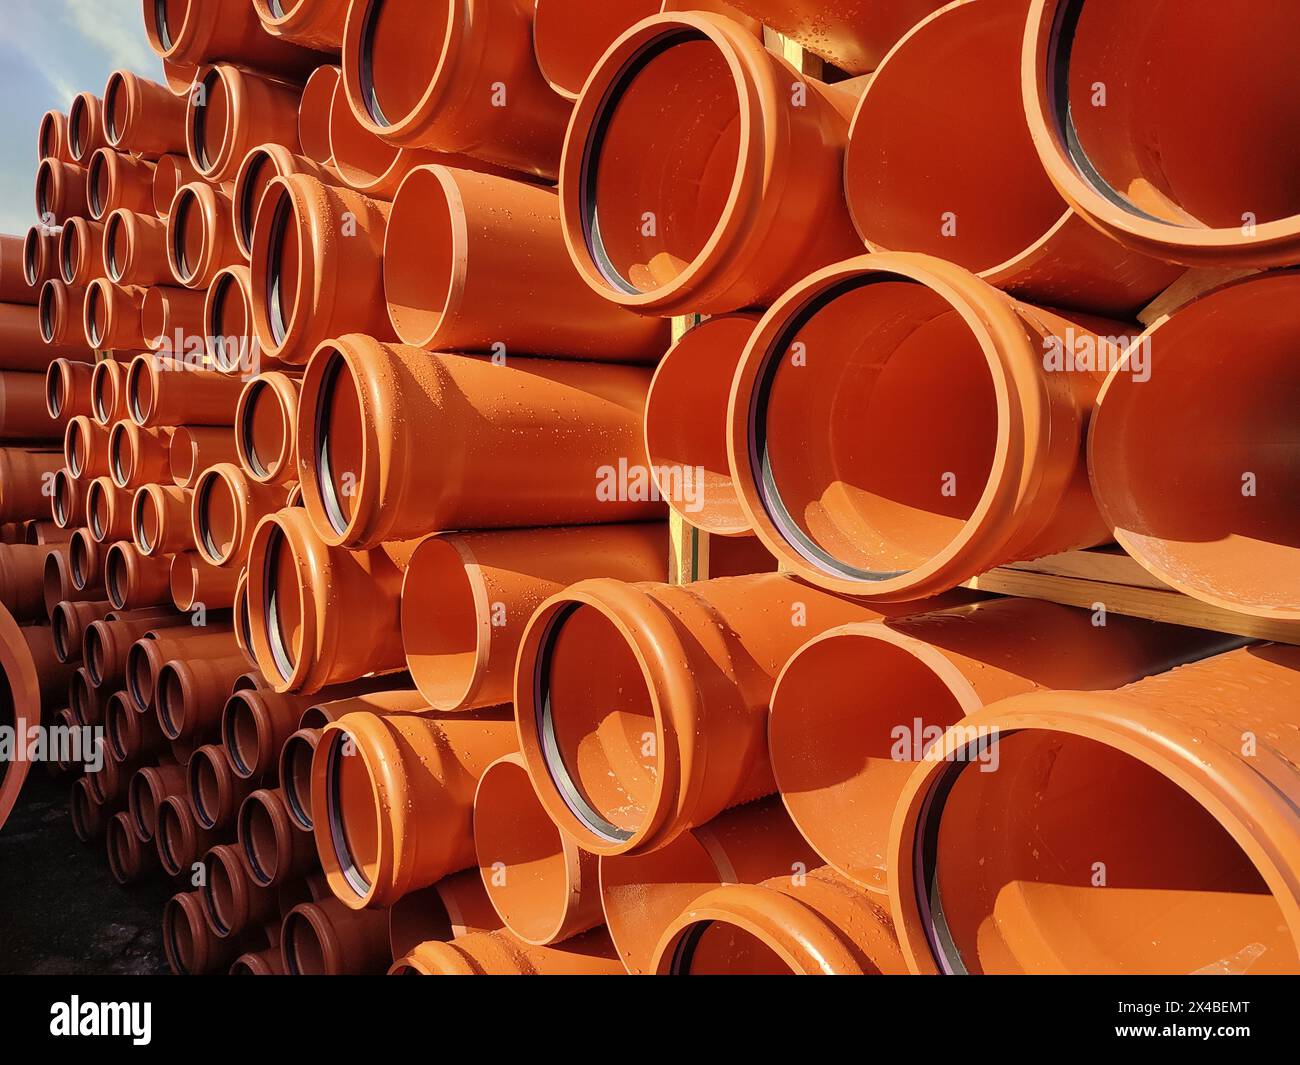 Fond orange de tuyaux d'égout en PVC pour la construction de réseaux d'égouts Banque D'Images